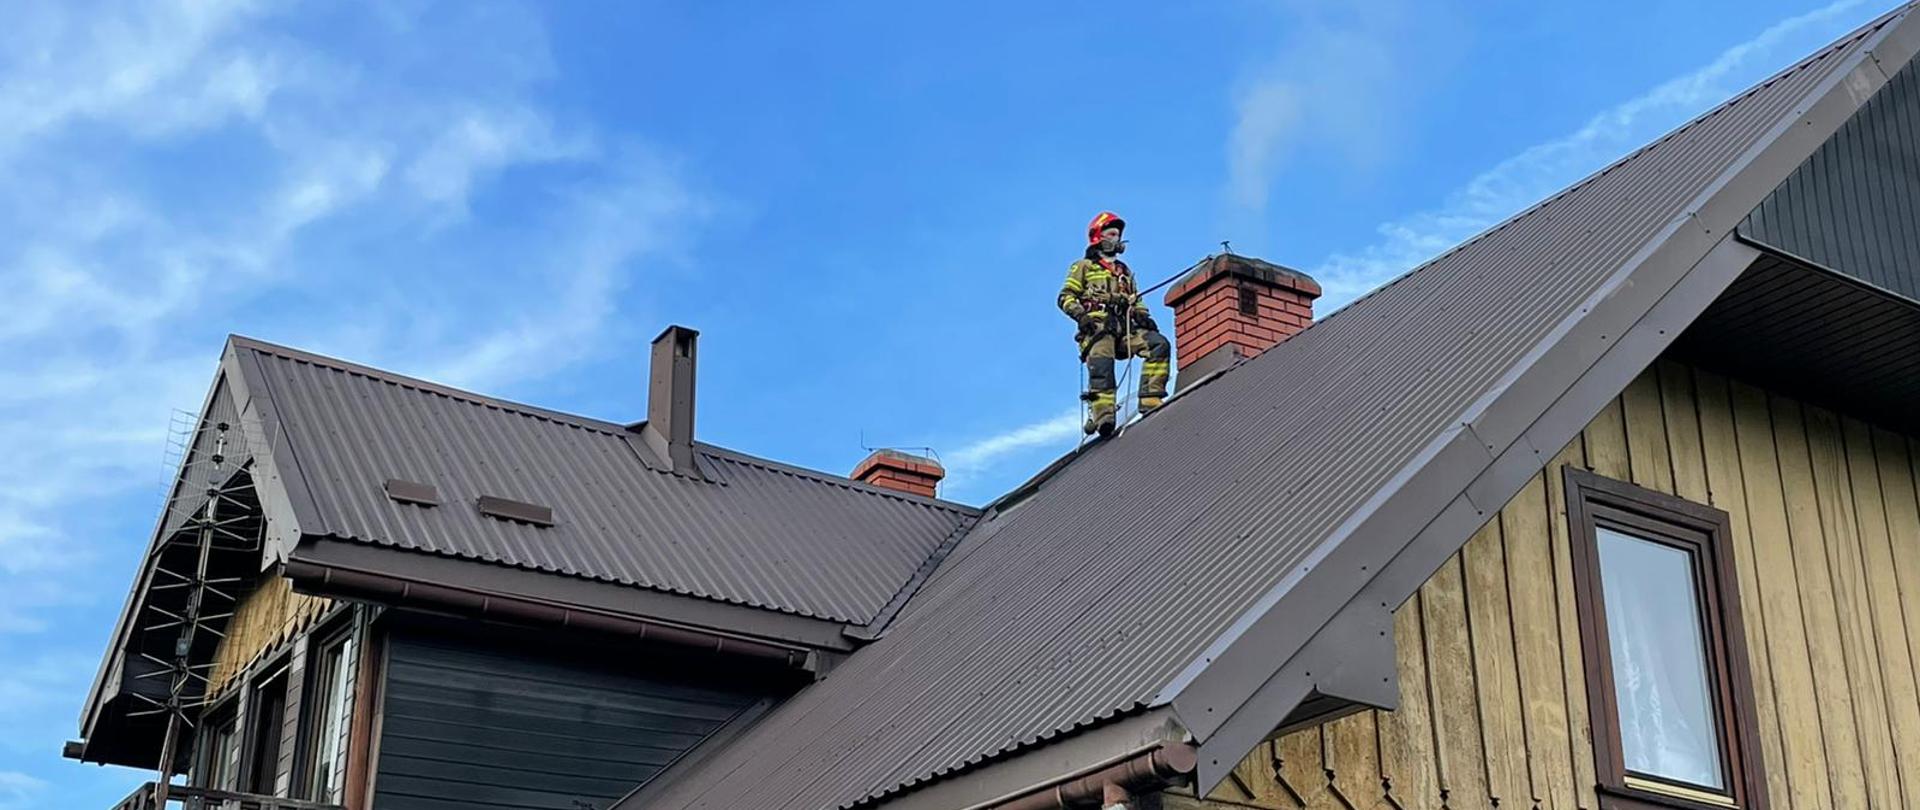 Strażak obok komina na dachu prowadzi działania